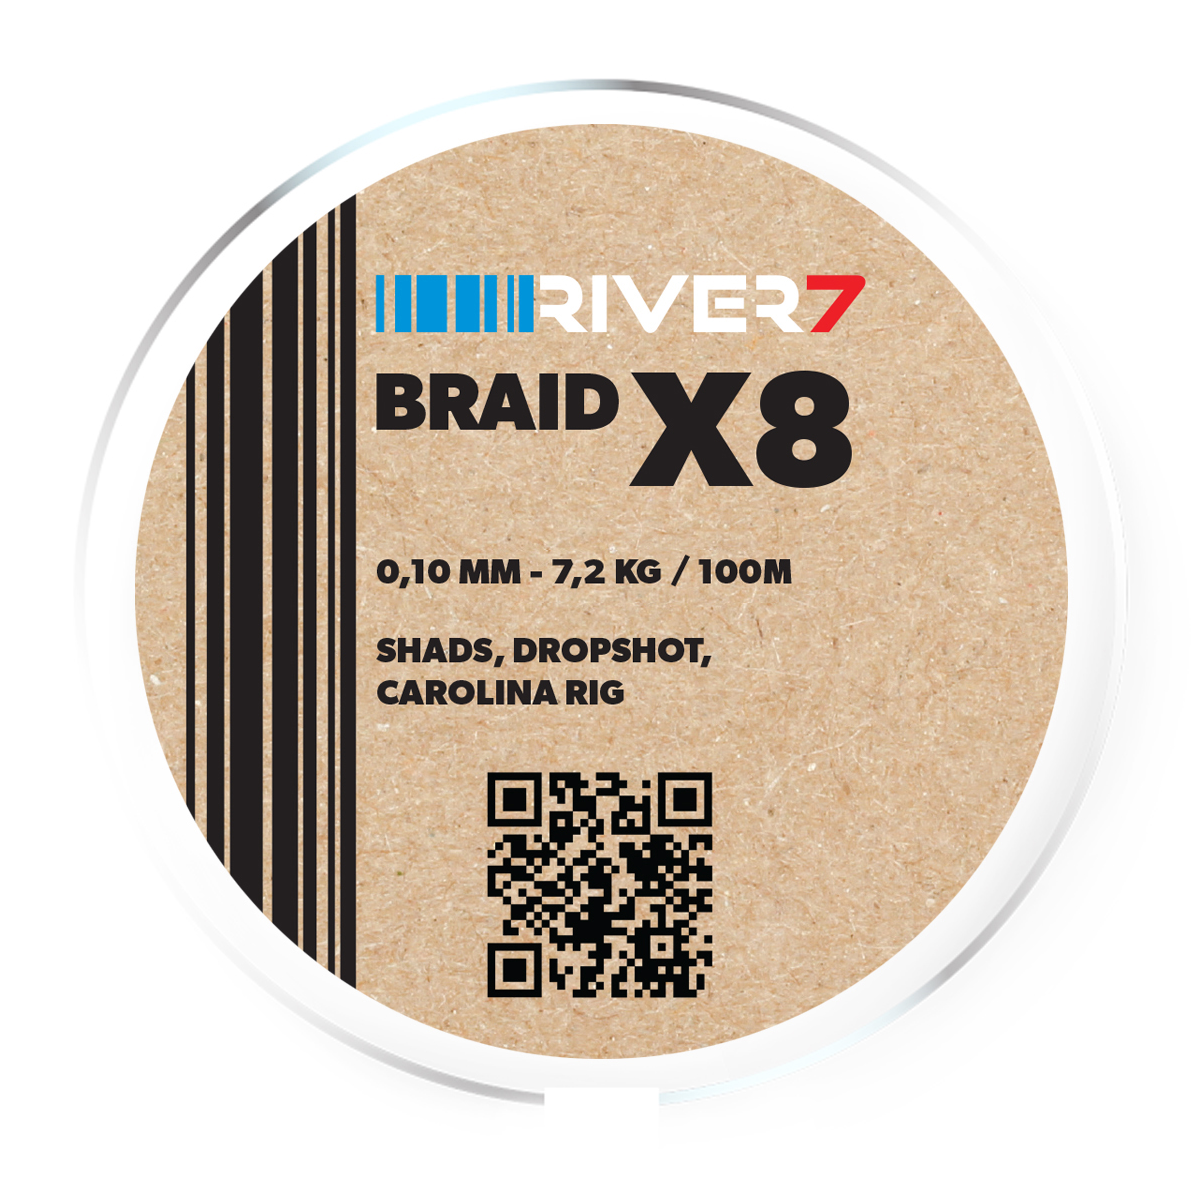 River7 X8 Braid -  0.10 mm